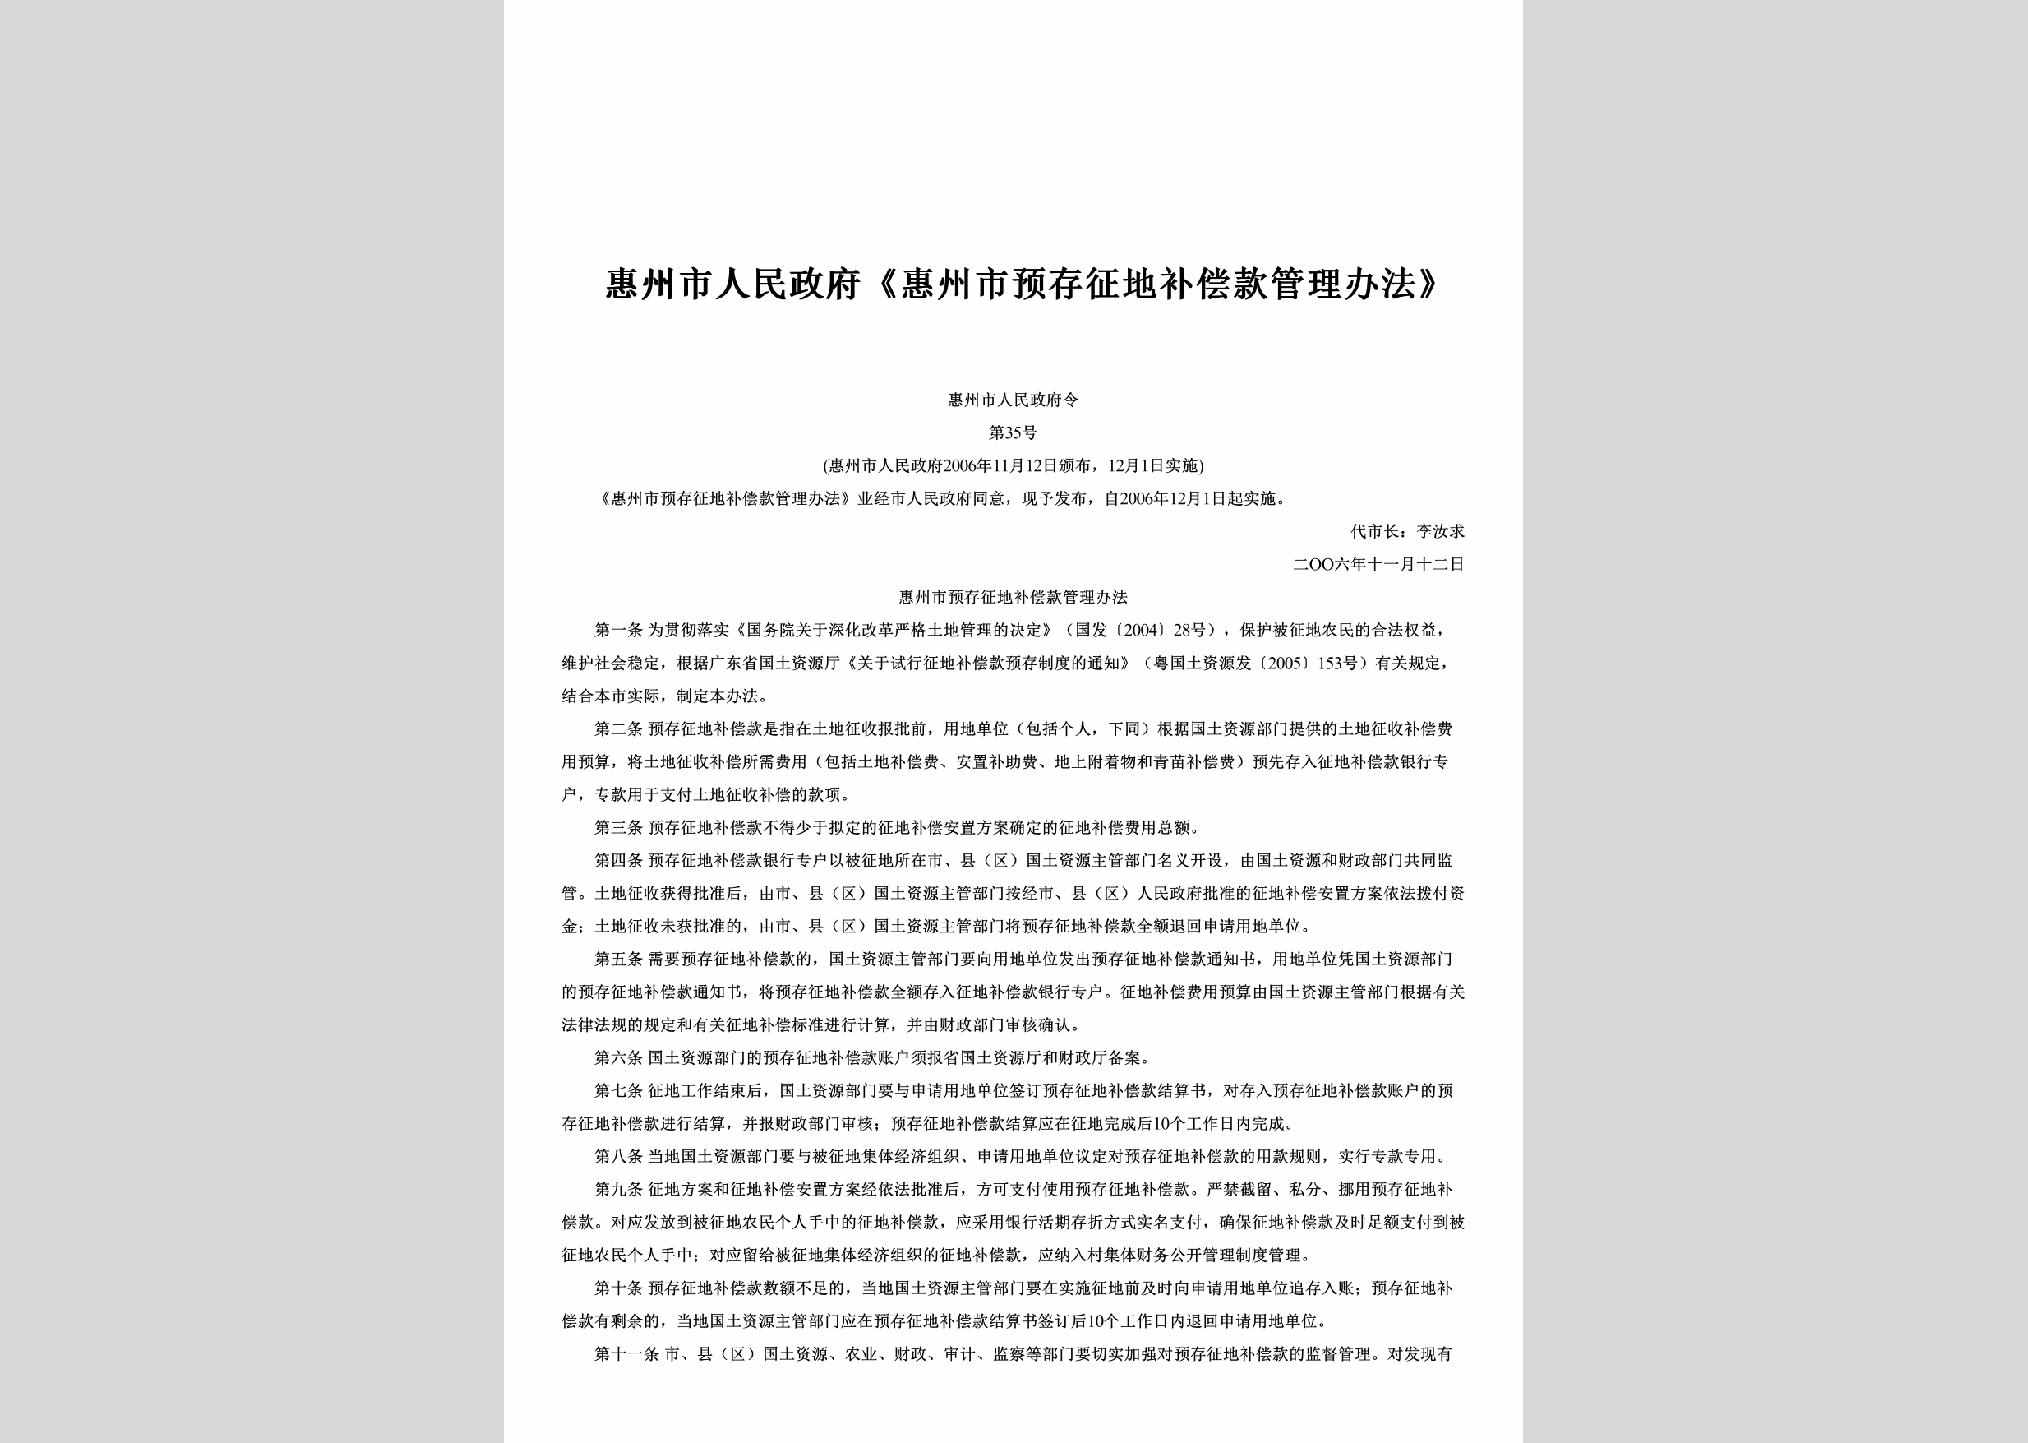 惠州市人民政府令第35号：《惠州市预存征地补偿款管理办法》